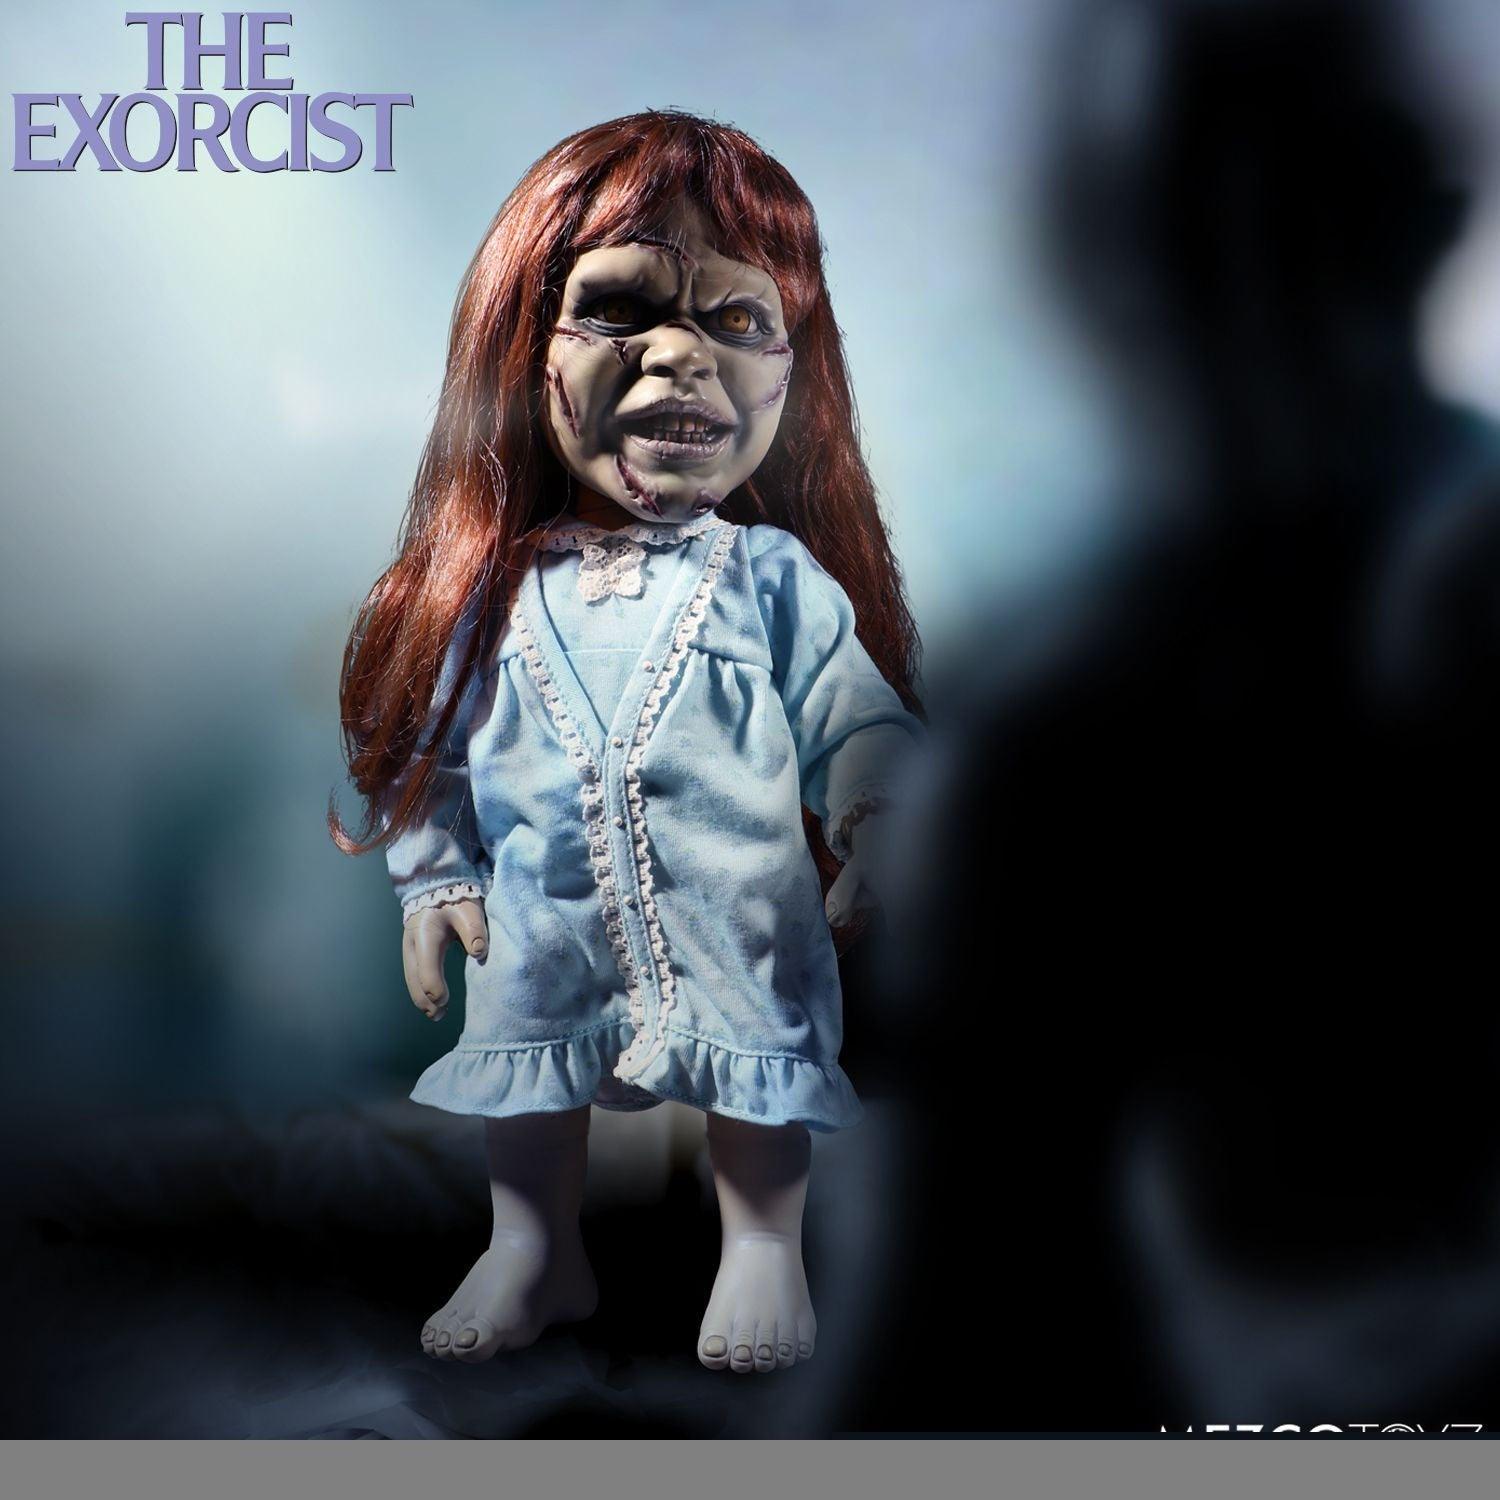 The Exorcist - Regan 15" Mega Scale Figure with Sound Action figures by Mezco Toyz | Titan Pop Culture